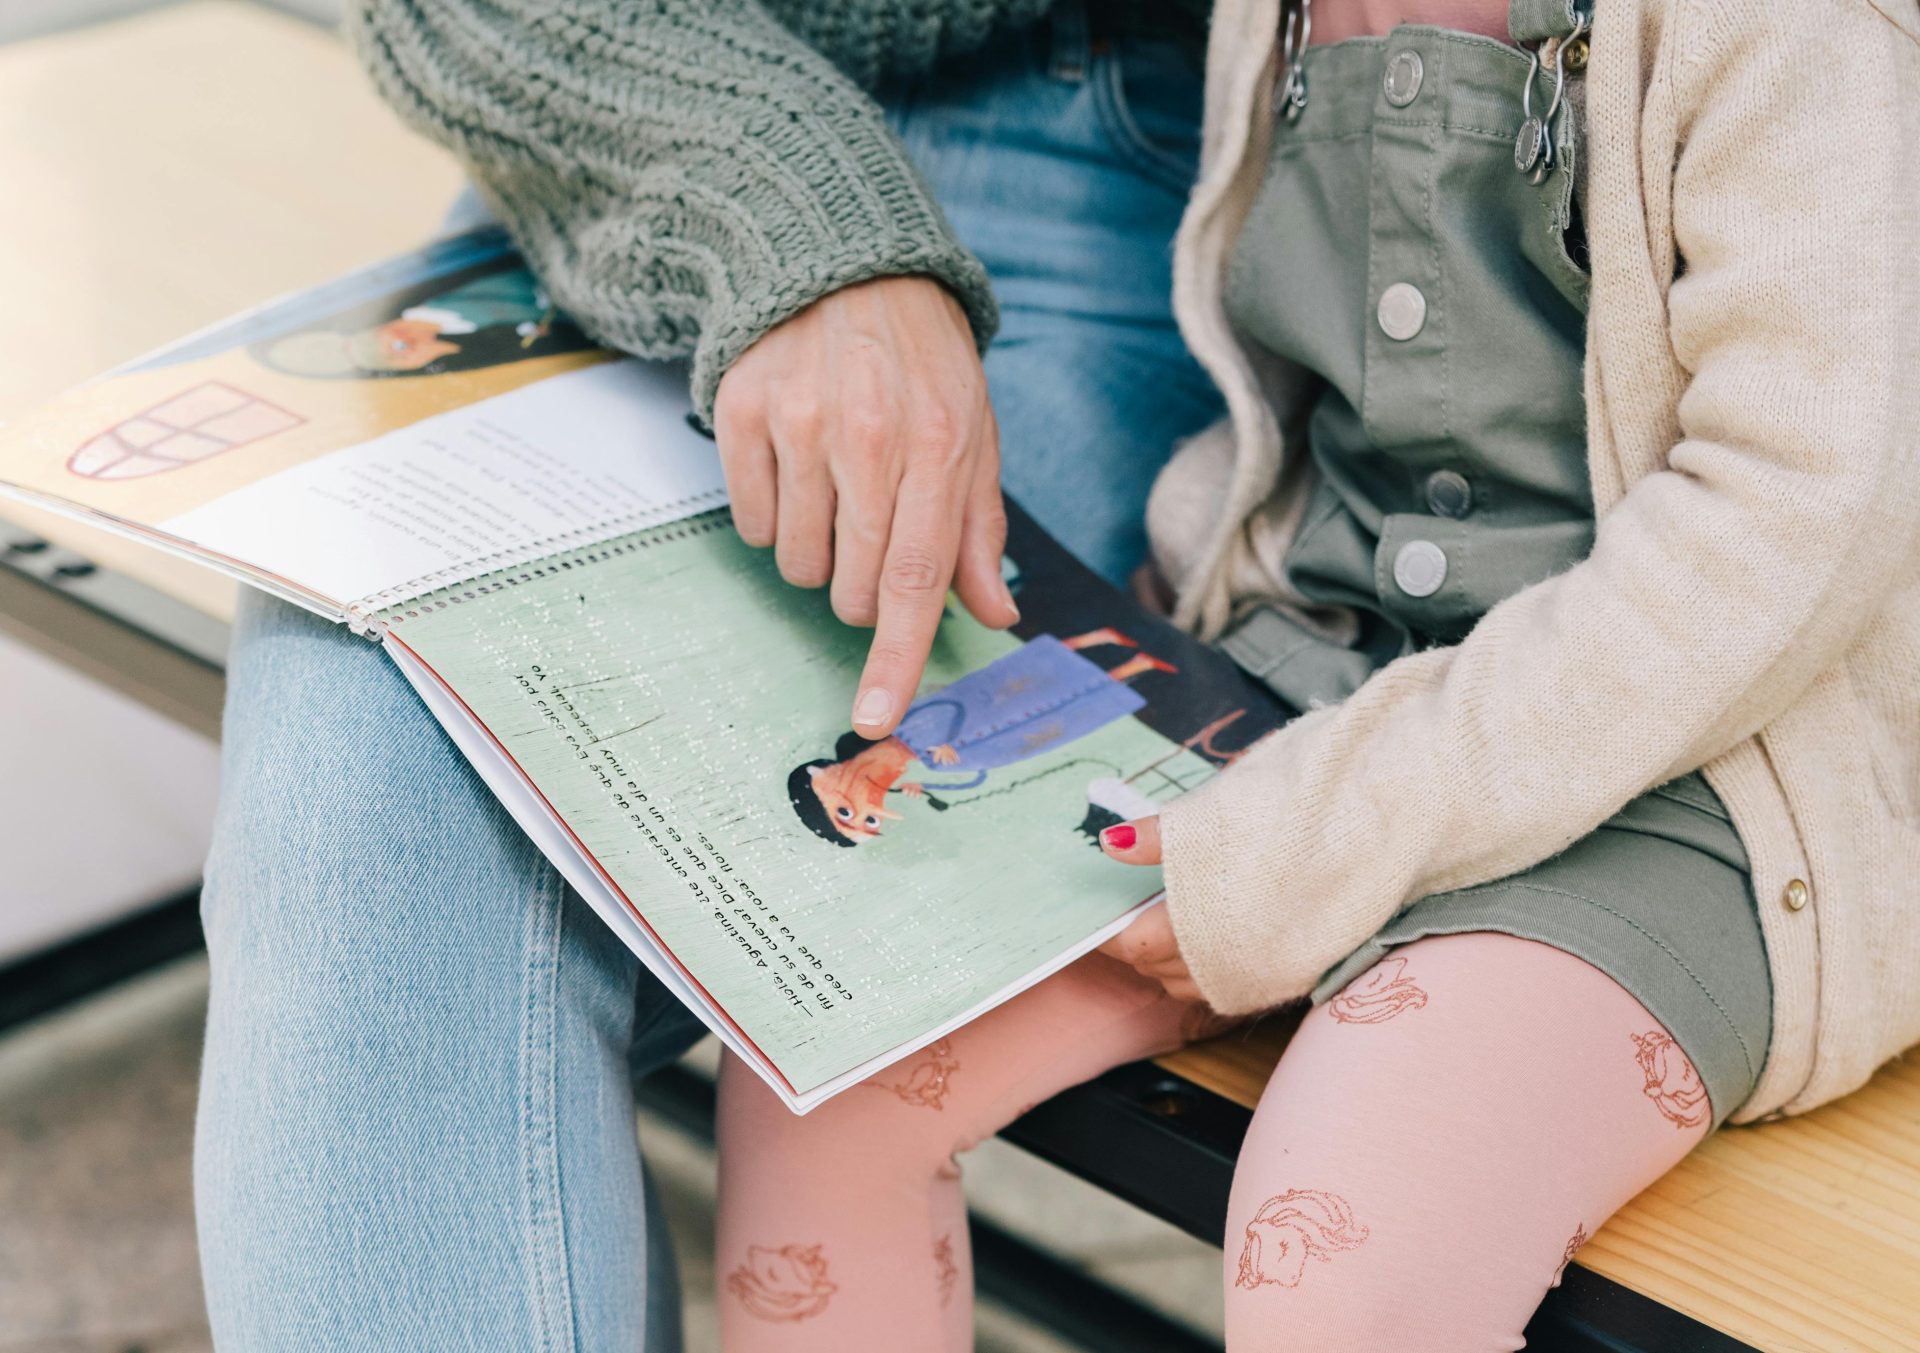 bambina legge libro in braille